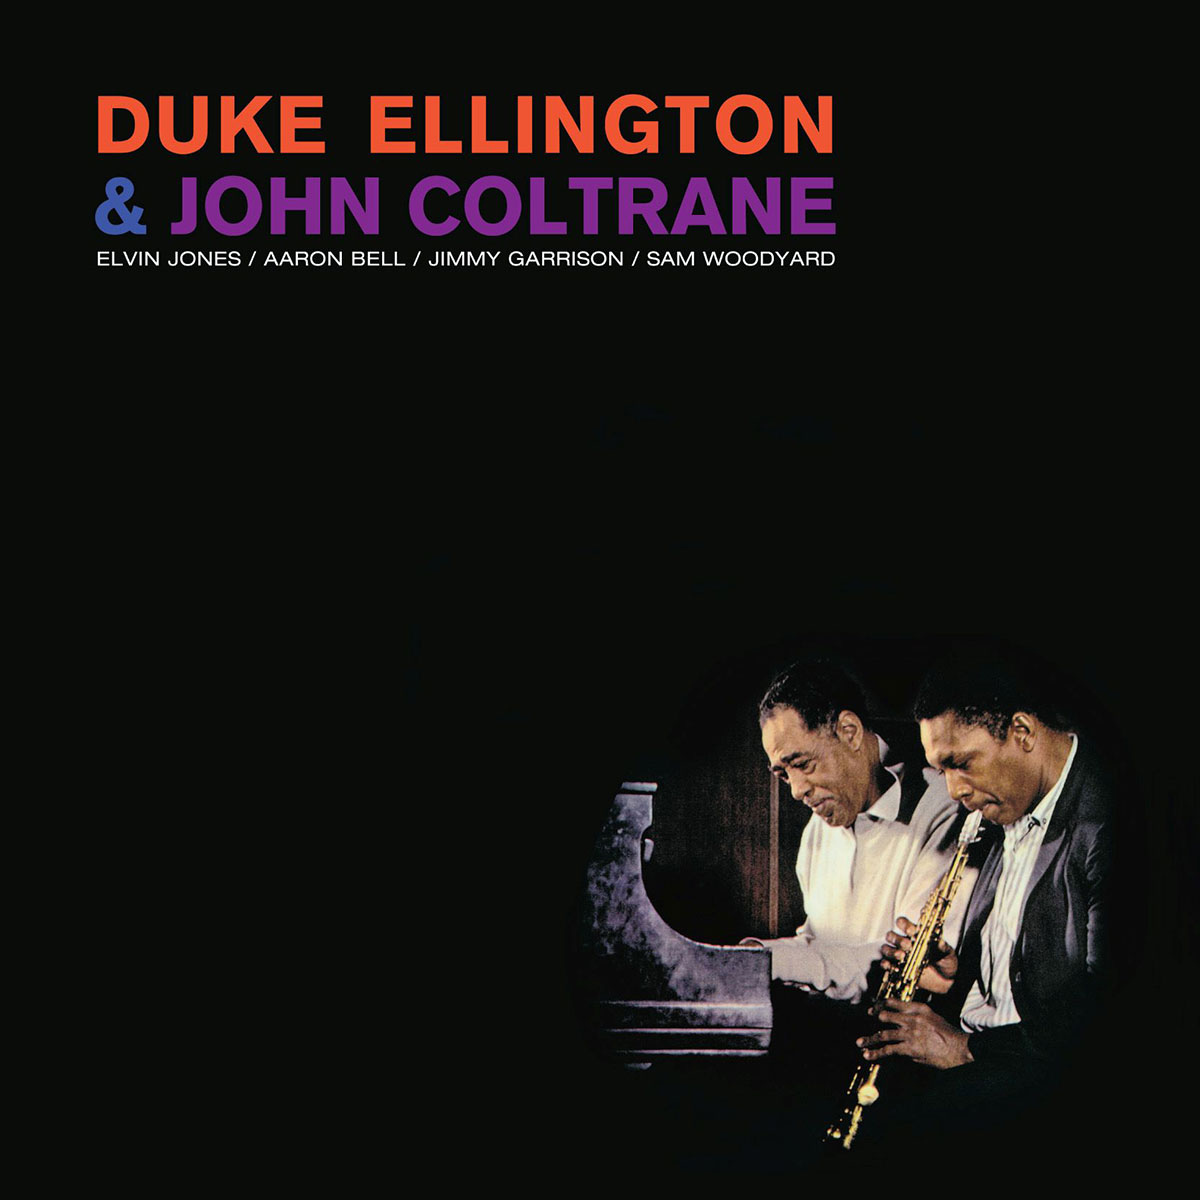 Duke Ellington & John Coltrane 
(180g LP + 7" Single)